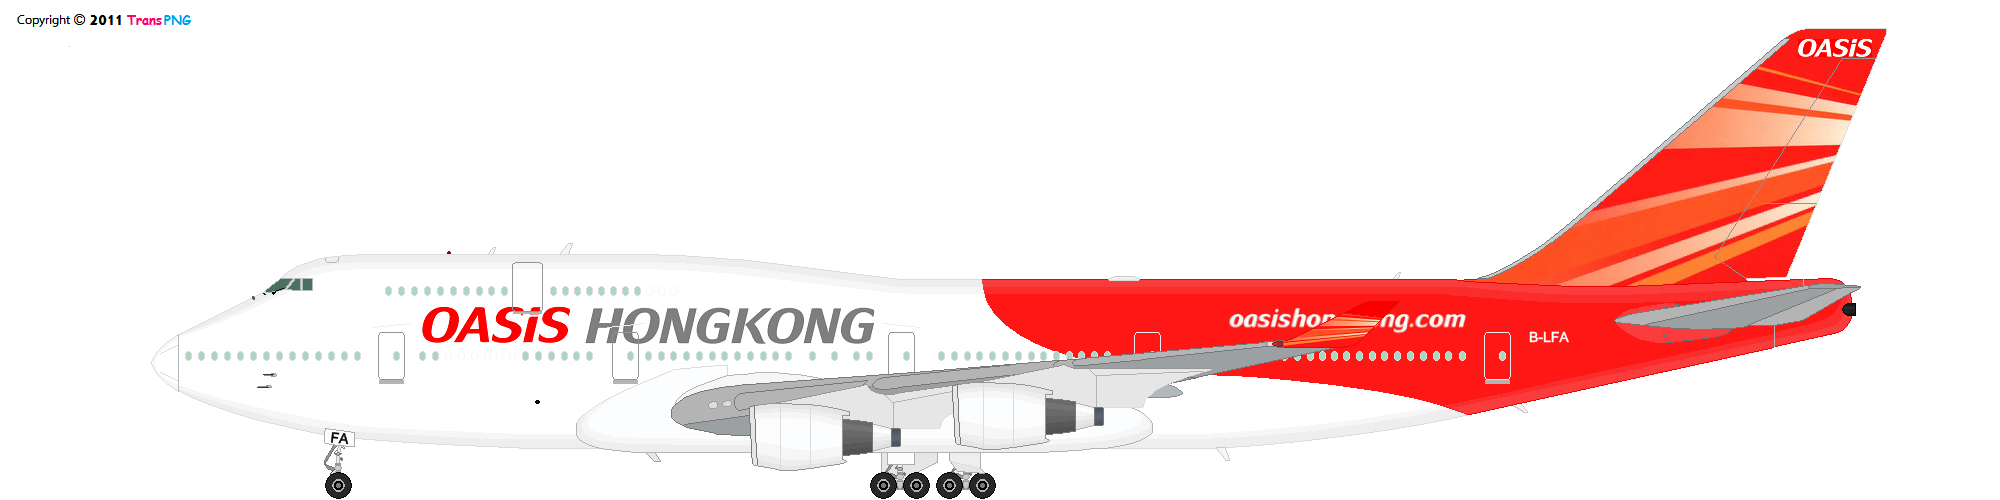 TransPNG.net | 分享世界各地多種交通工具的優秀繪圖 - 飛機 52135900324_bf75444356_o